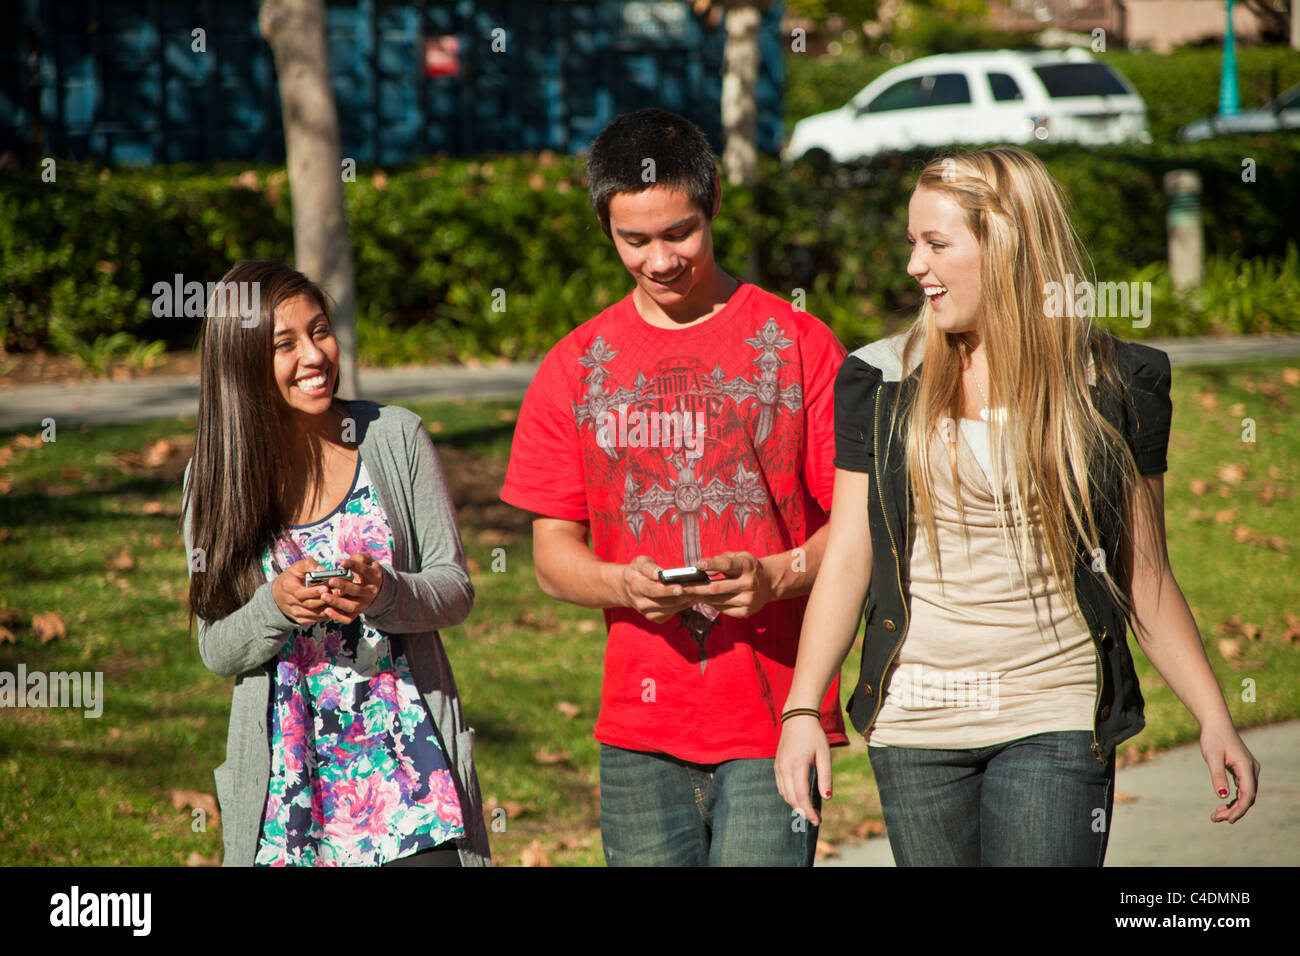 Glücklich lachende Multi Diverse American Indian, kaukasischen und Hispanic Volksgruppe von 3 drei Jugendliche zu Fuß zu Fuß mit iPhone Mobile Phone. HERR Stockfoto